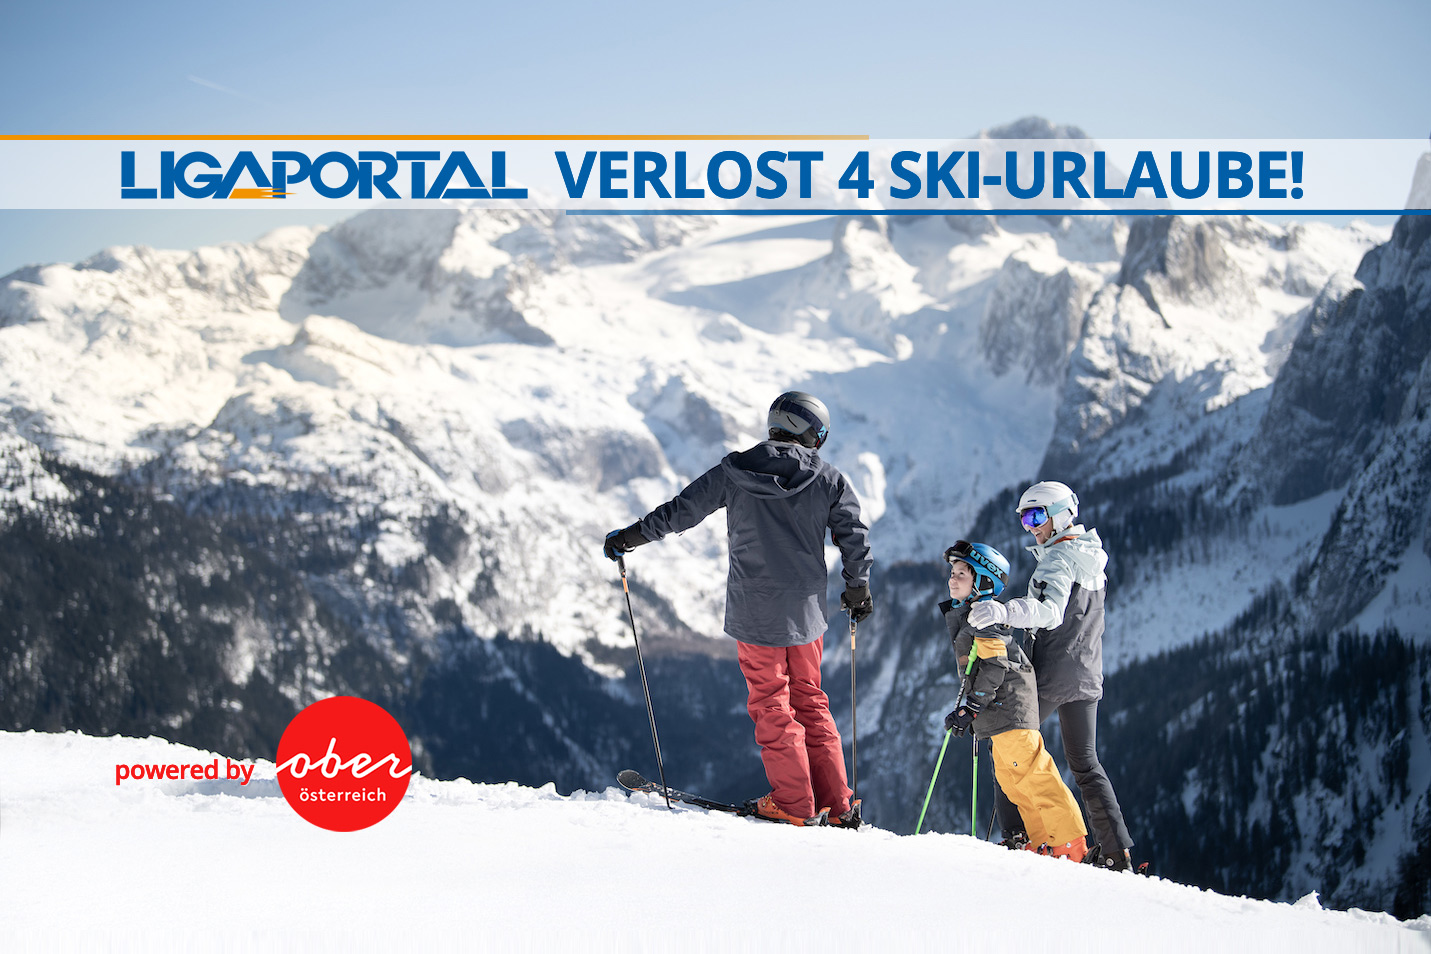 Ligaportal verlost 4 Ski-Urlaube in der Urlaubsregion Oberösterreich!